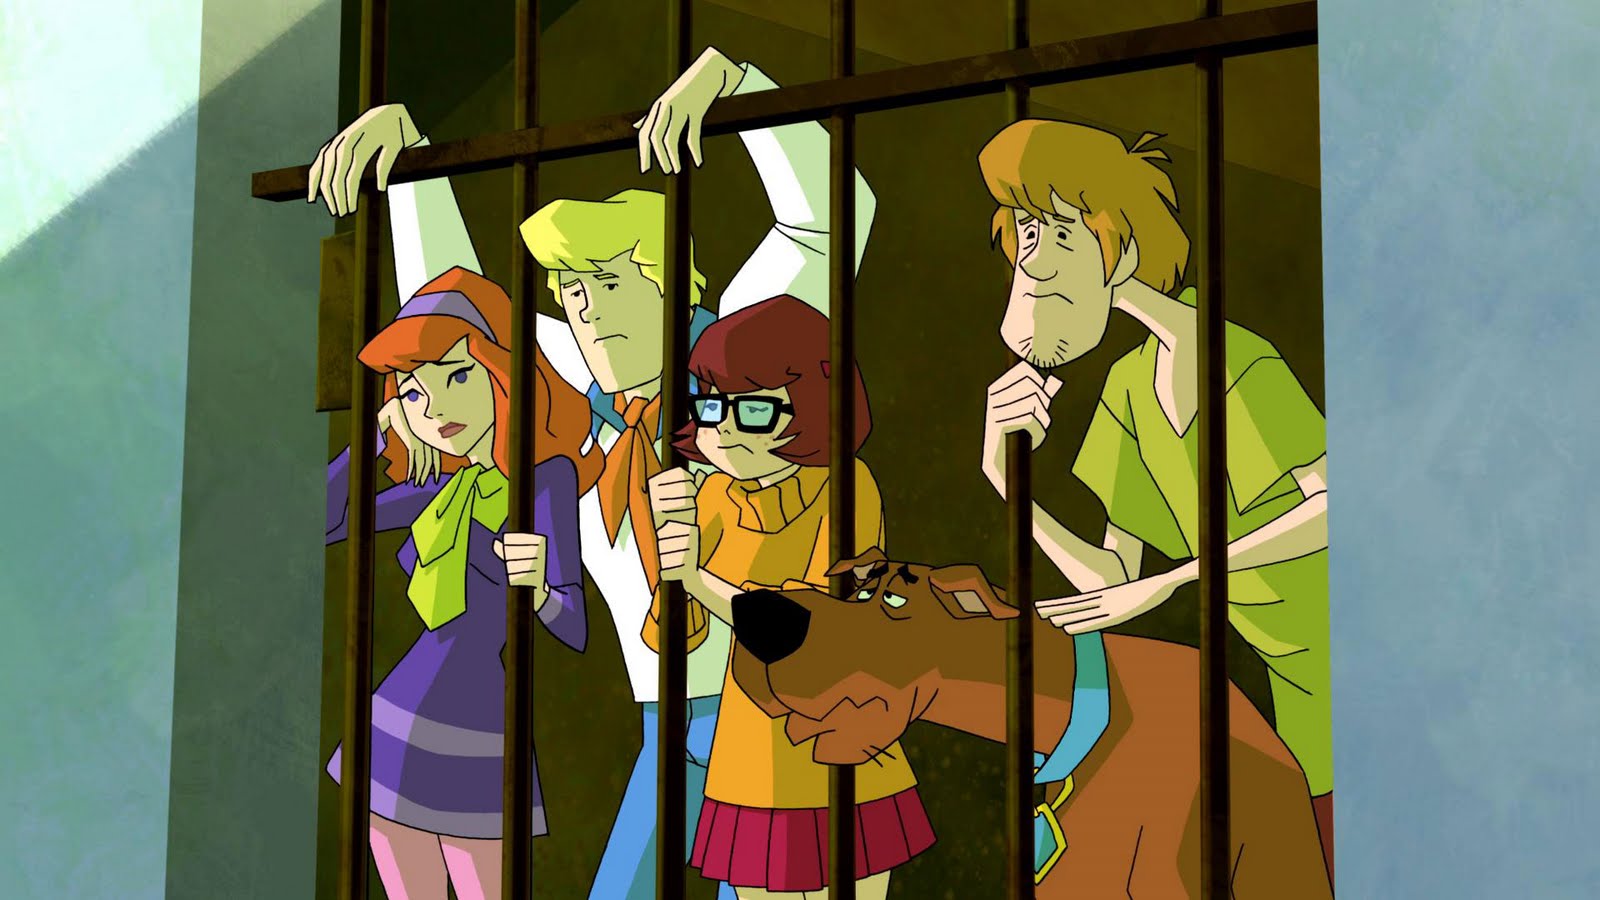 Scooby-Doo: Záhady, s. r. o.